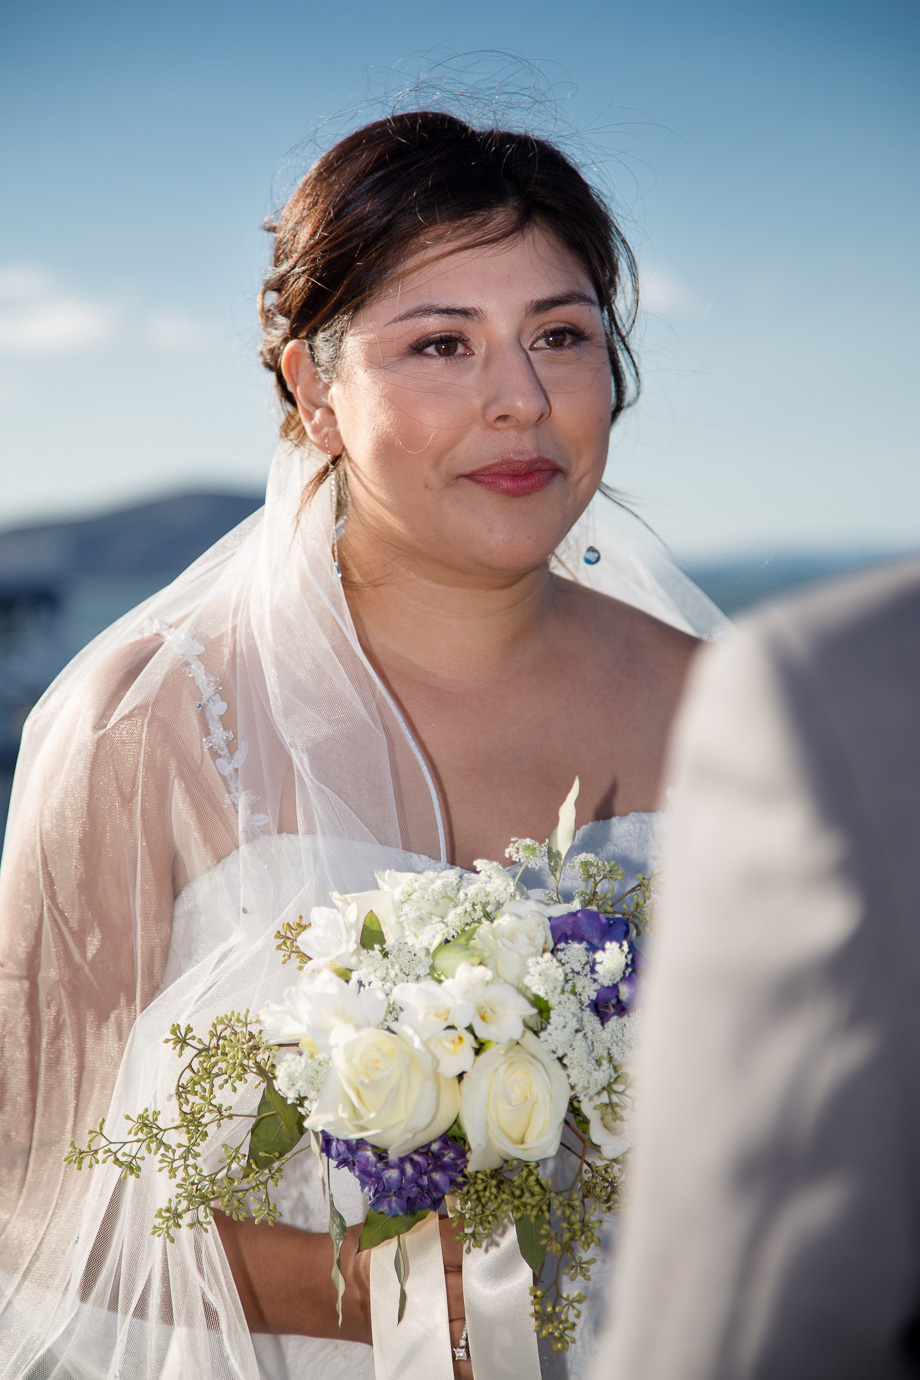 Teary-eyed bride looking at groom